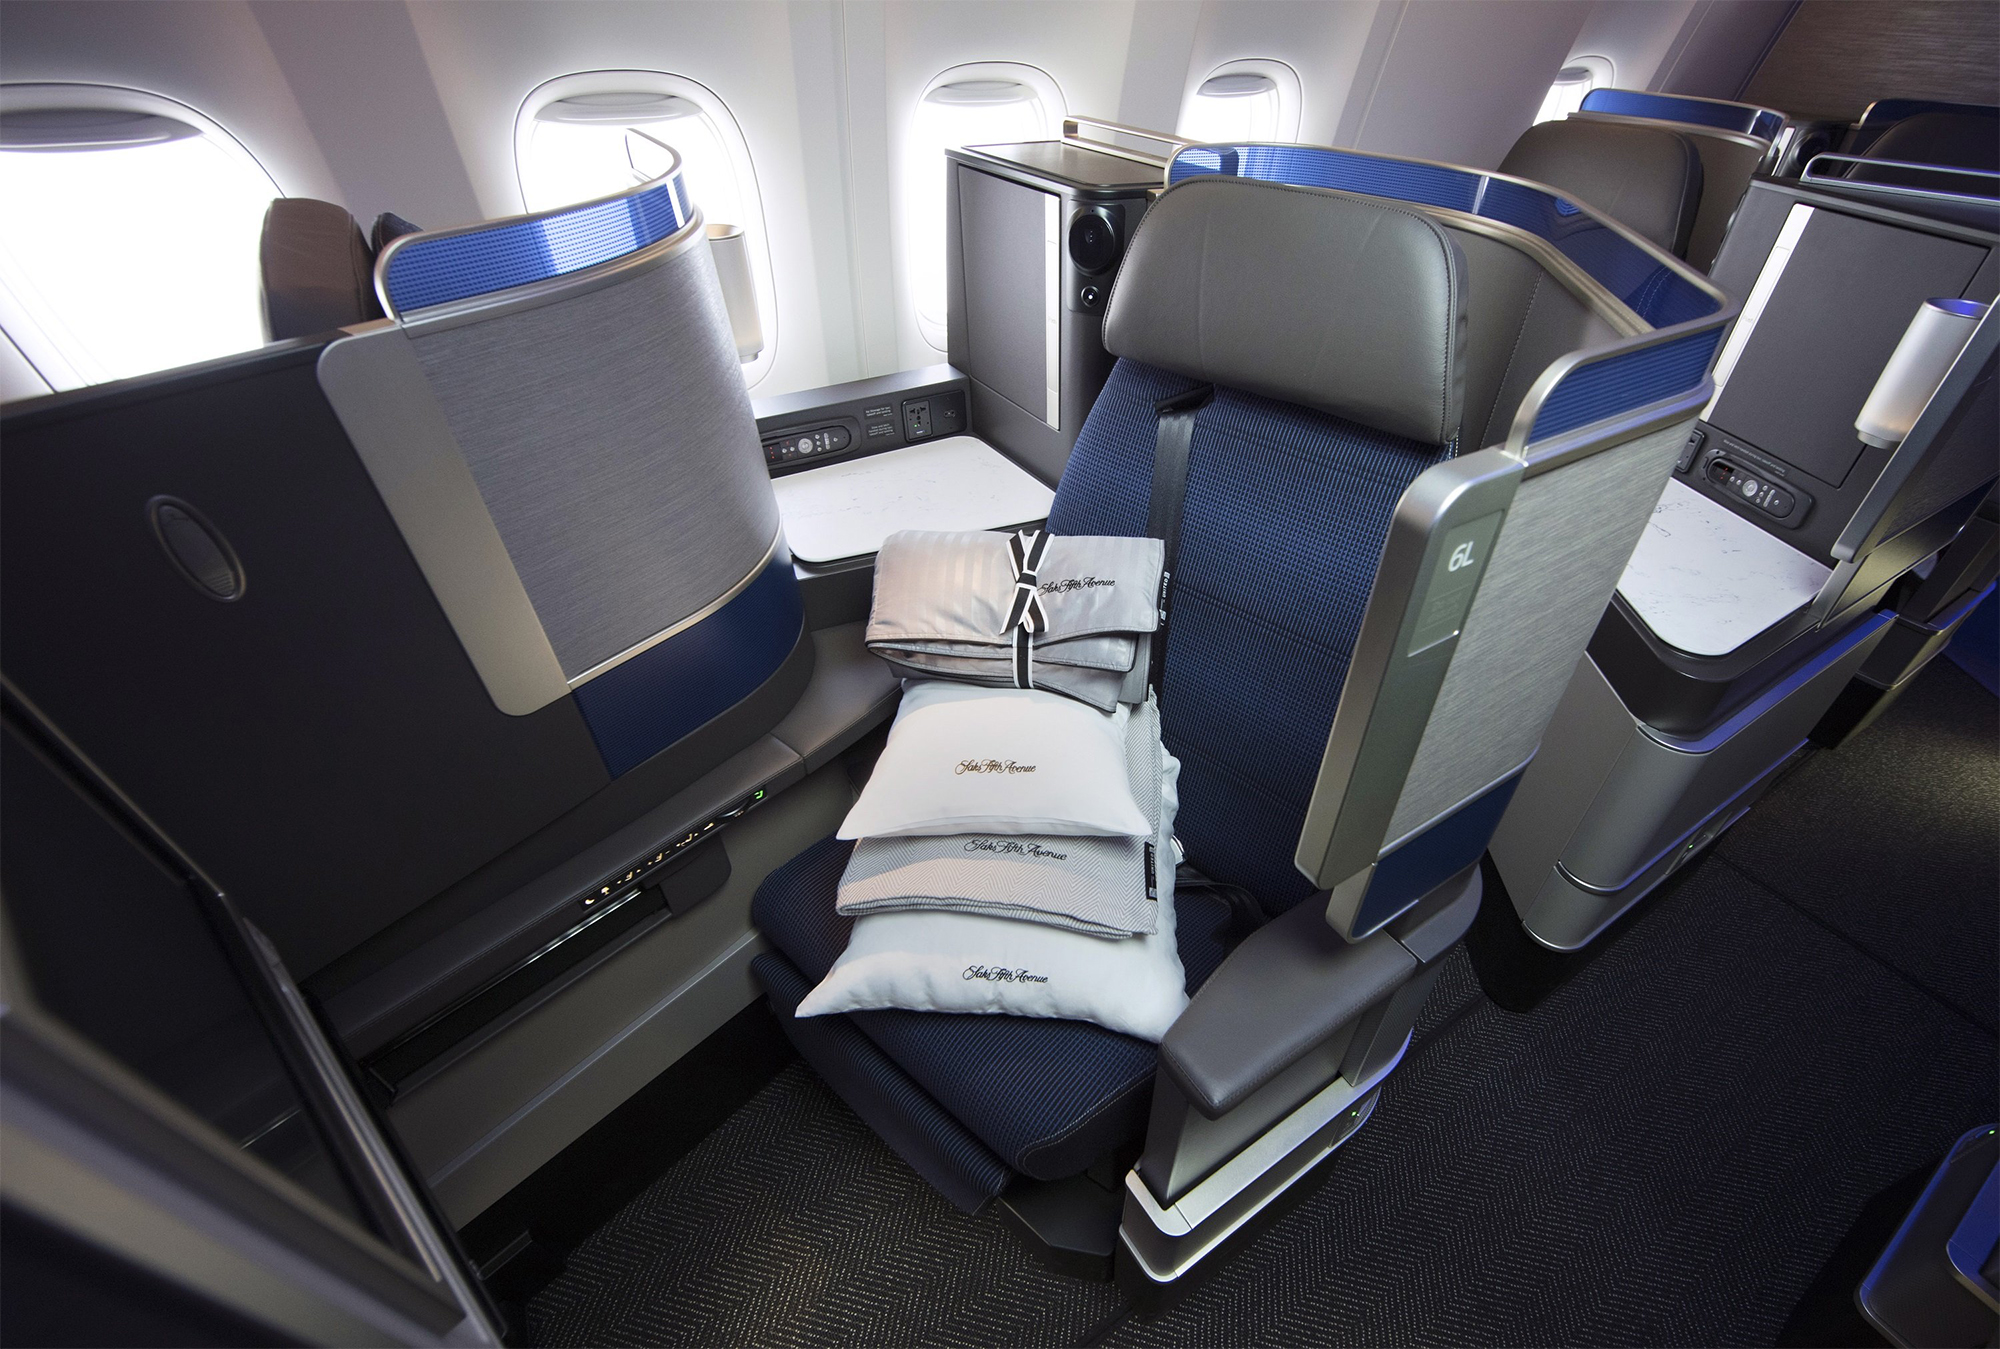 United Polaris Seat (United Airlines).jpg